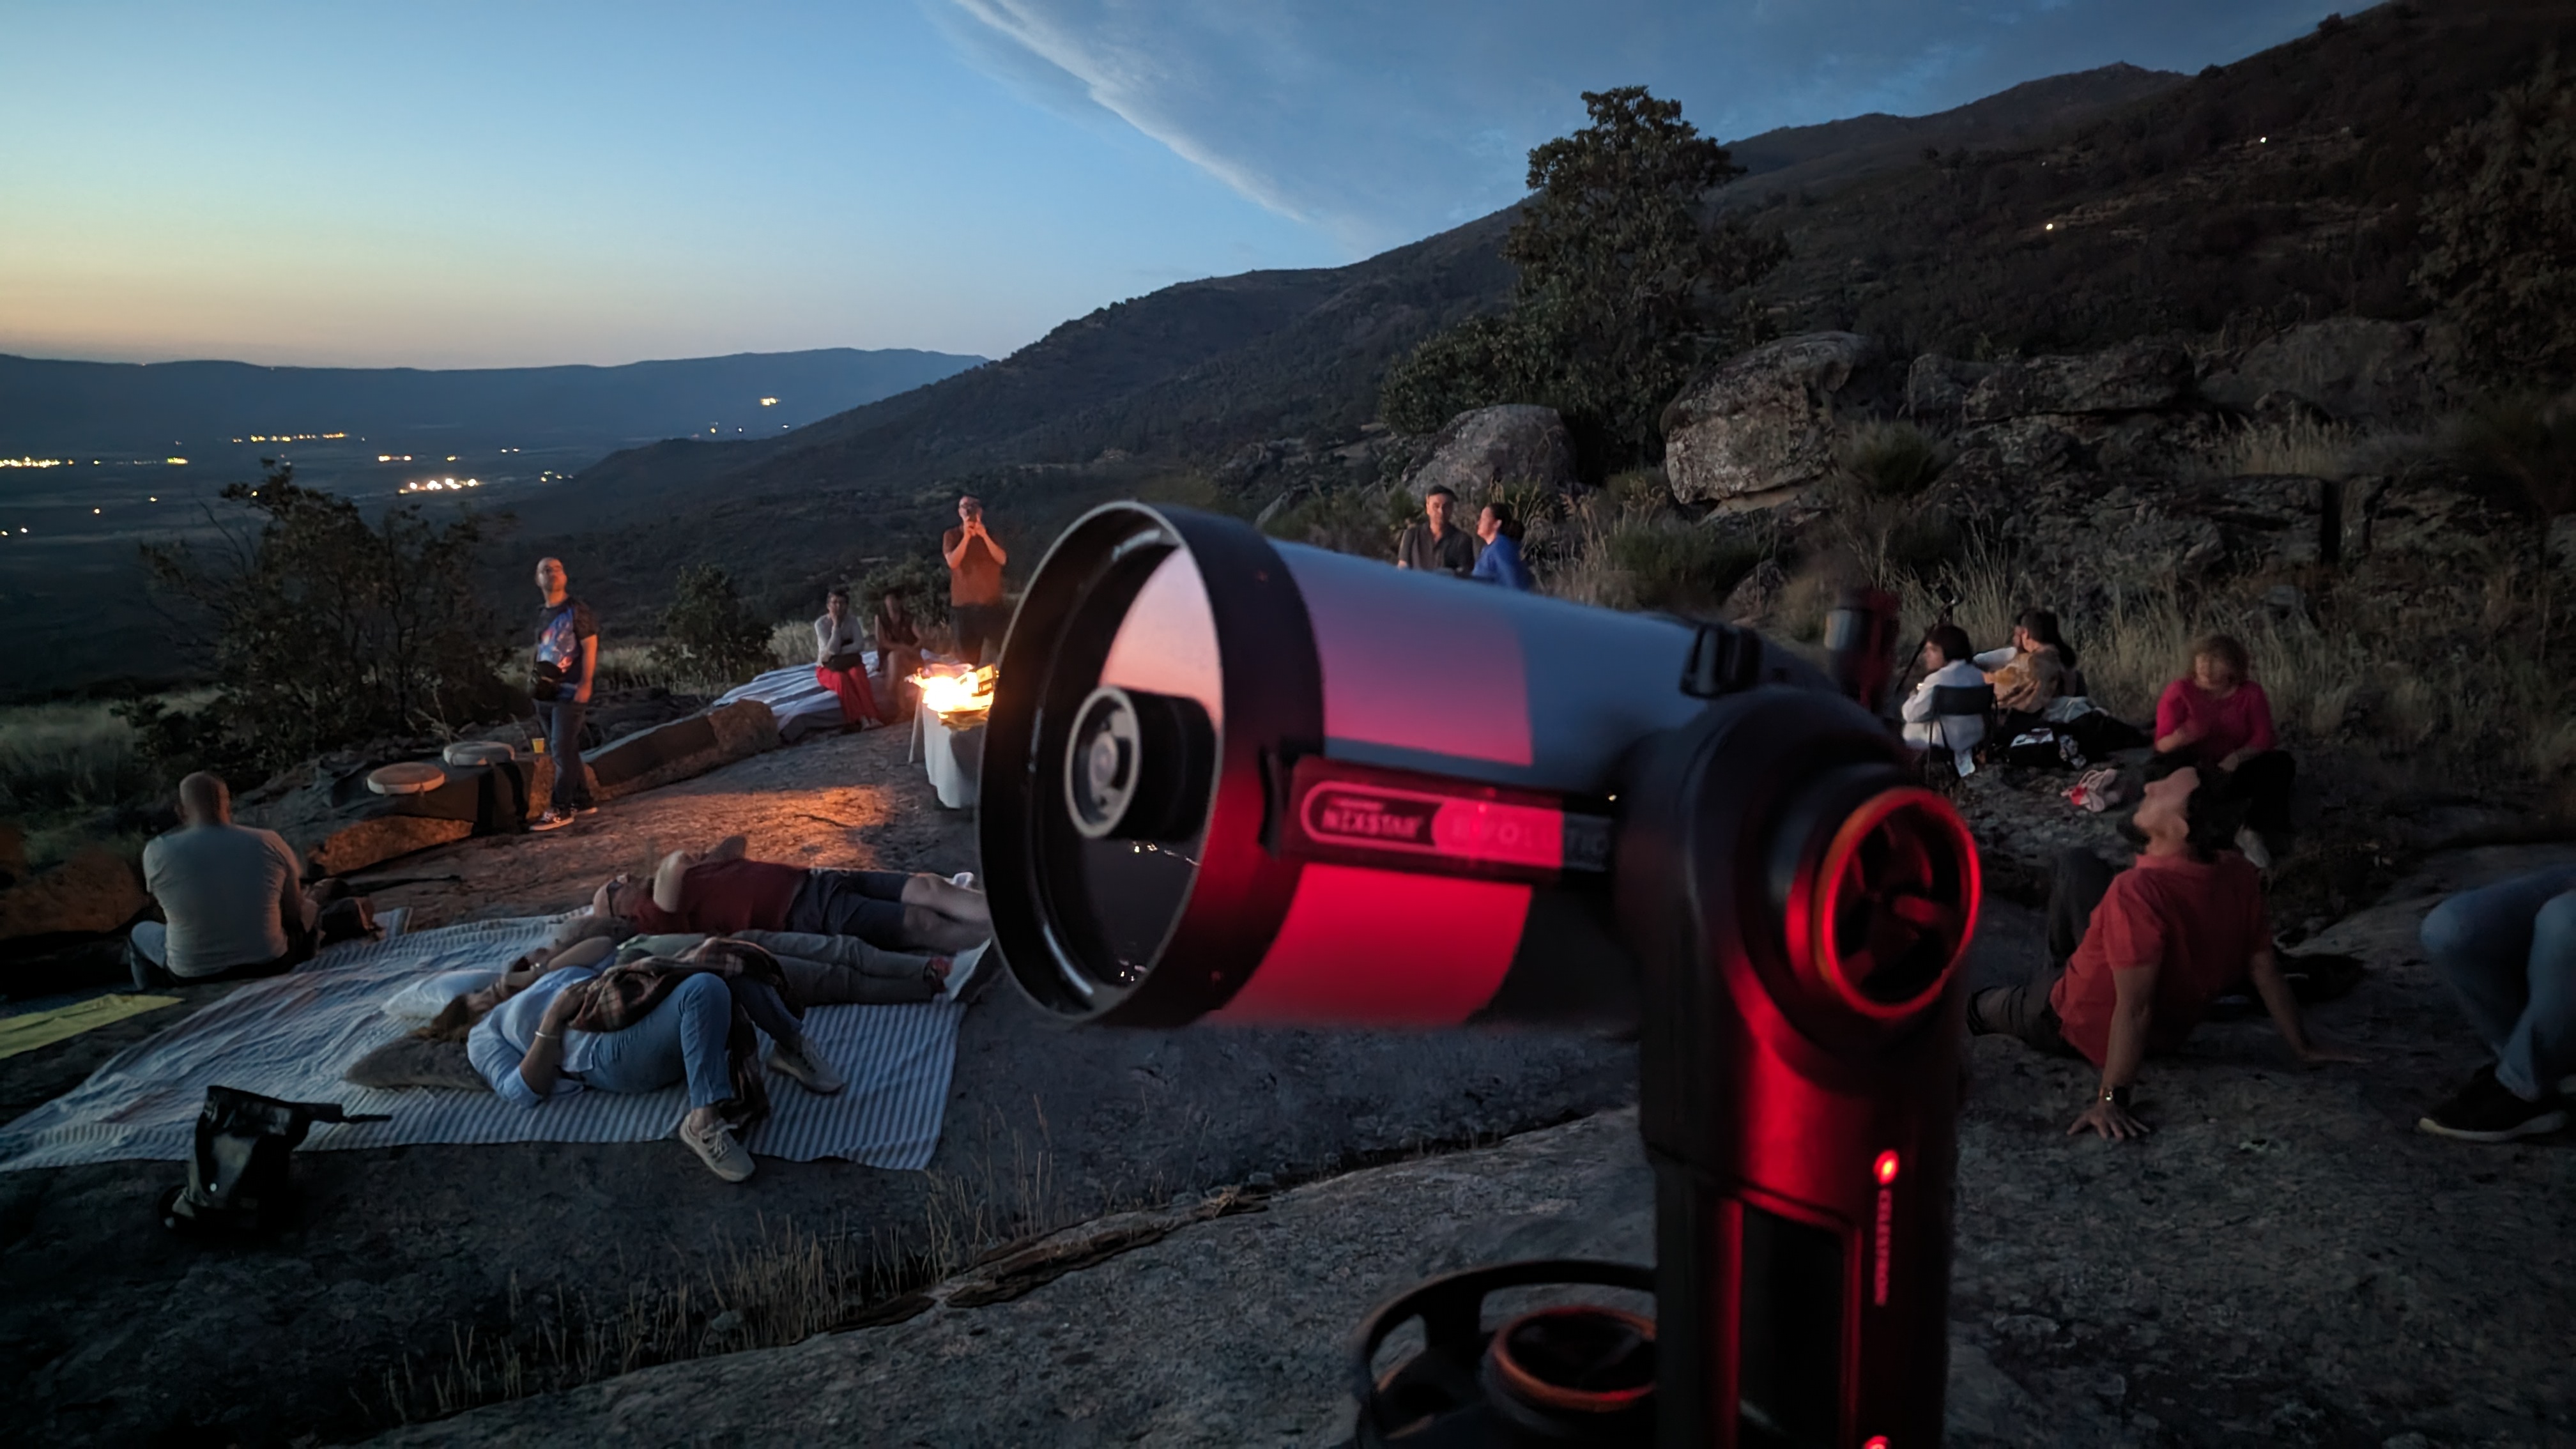 Grupo de personas al atardecer en la montaña y un telescopio de alta gama en primer plano